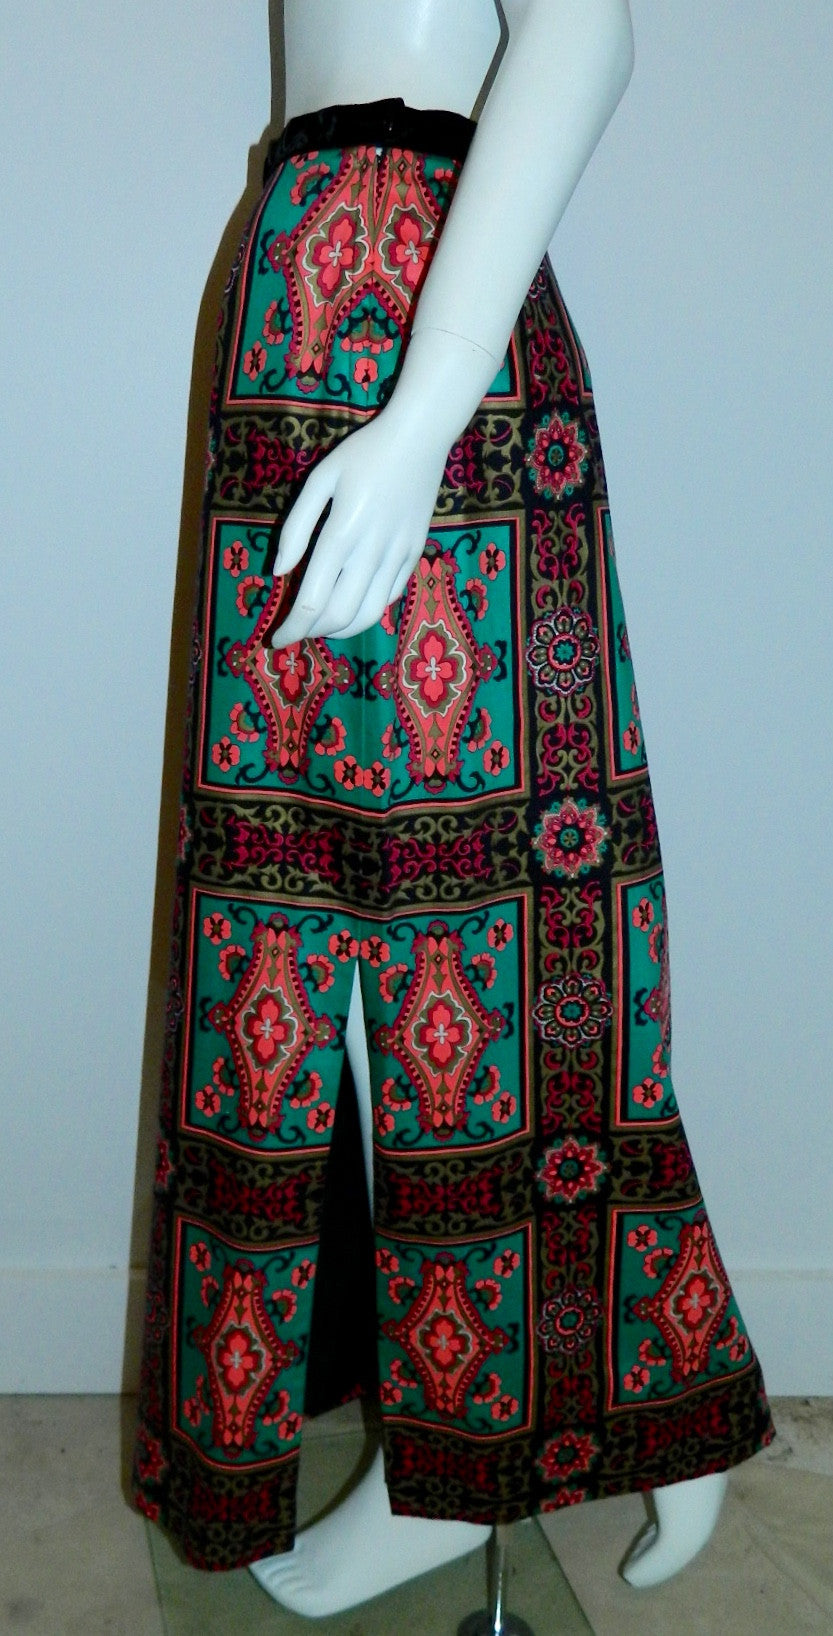 vintage Alex Coleman skirt / teal pink baroque frame print / wool side slit column skirt 1970s